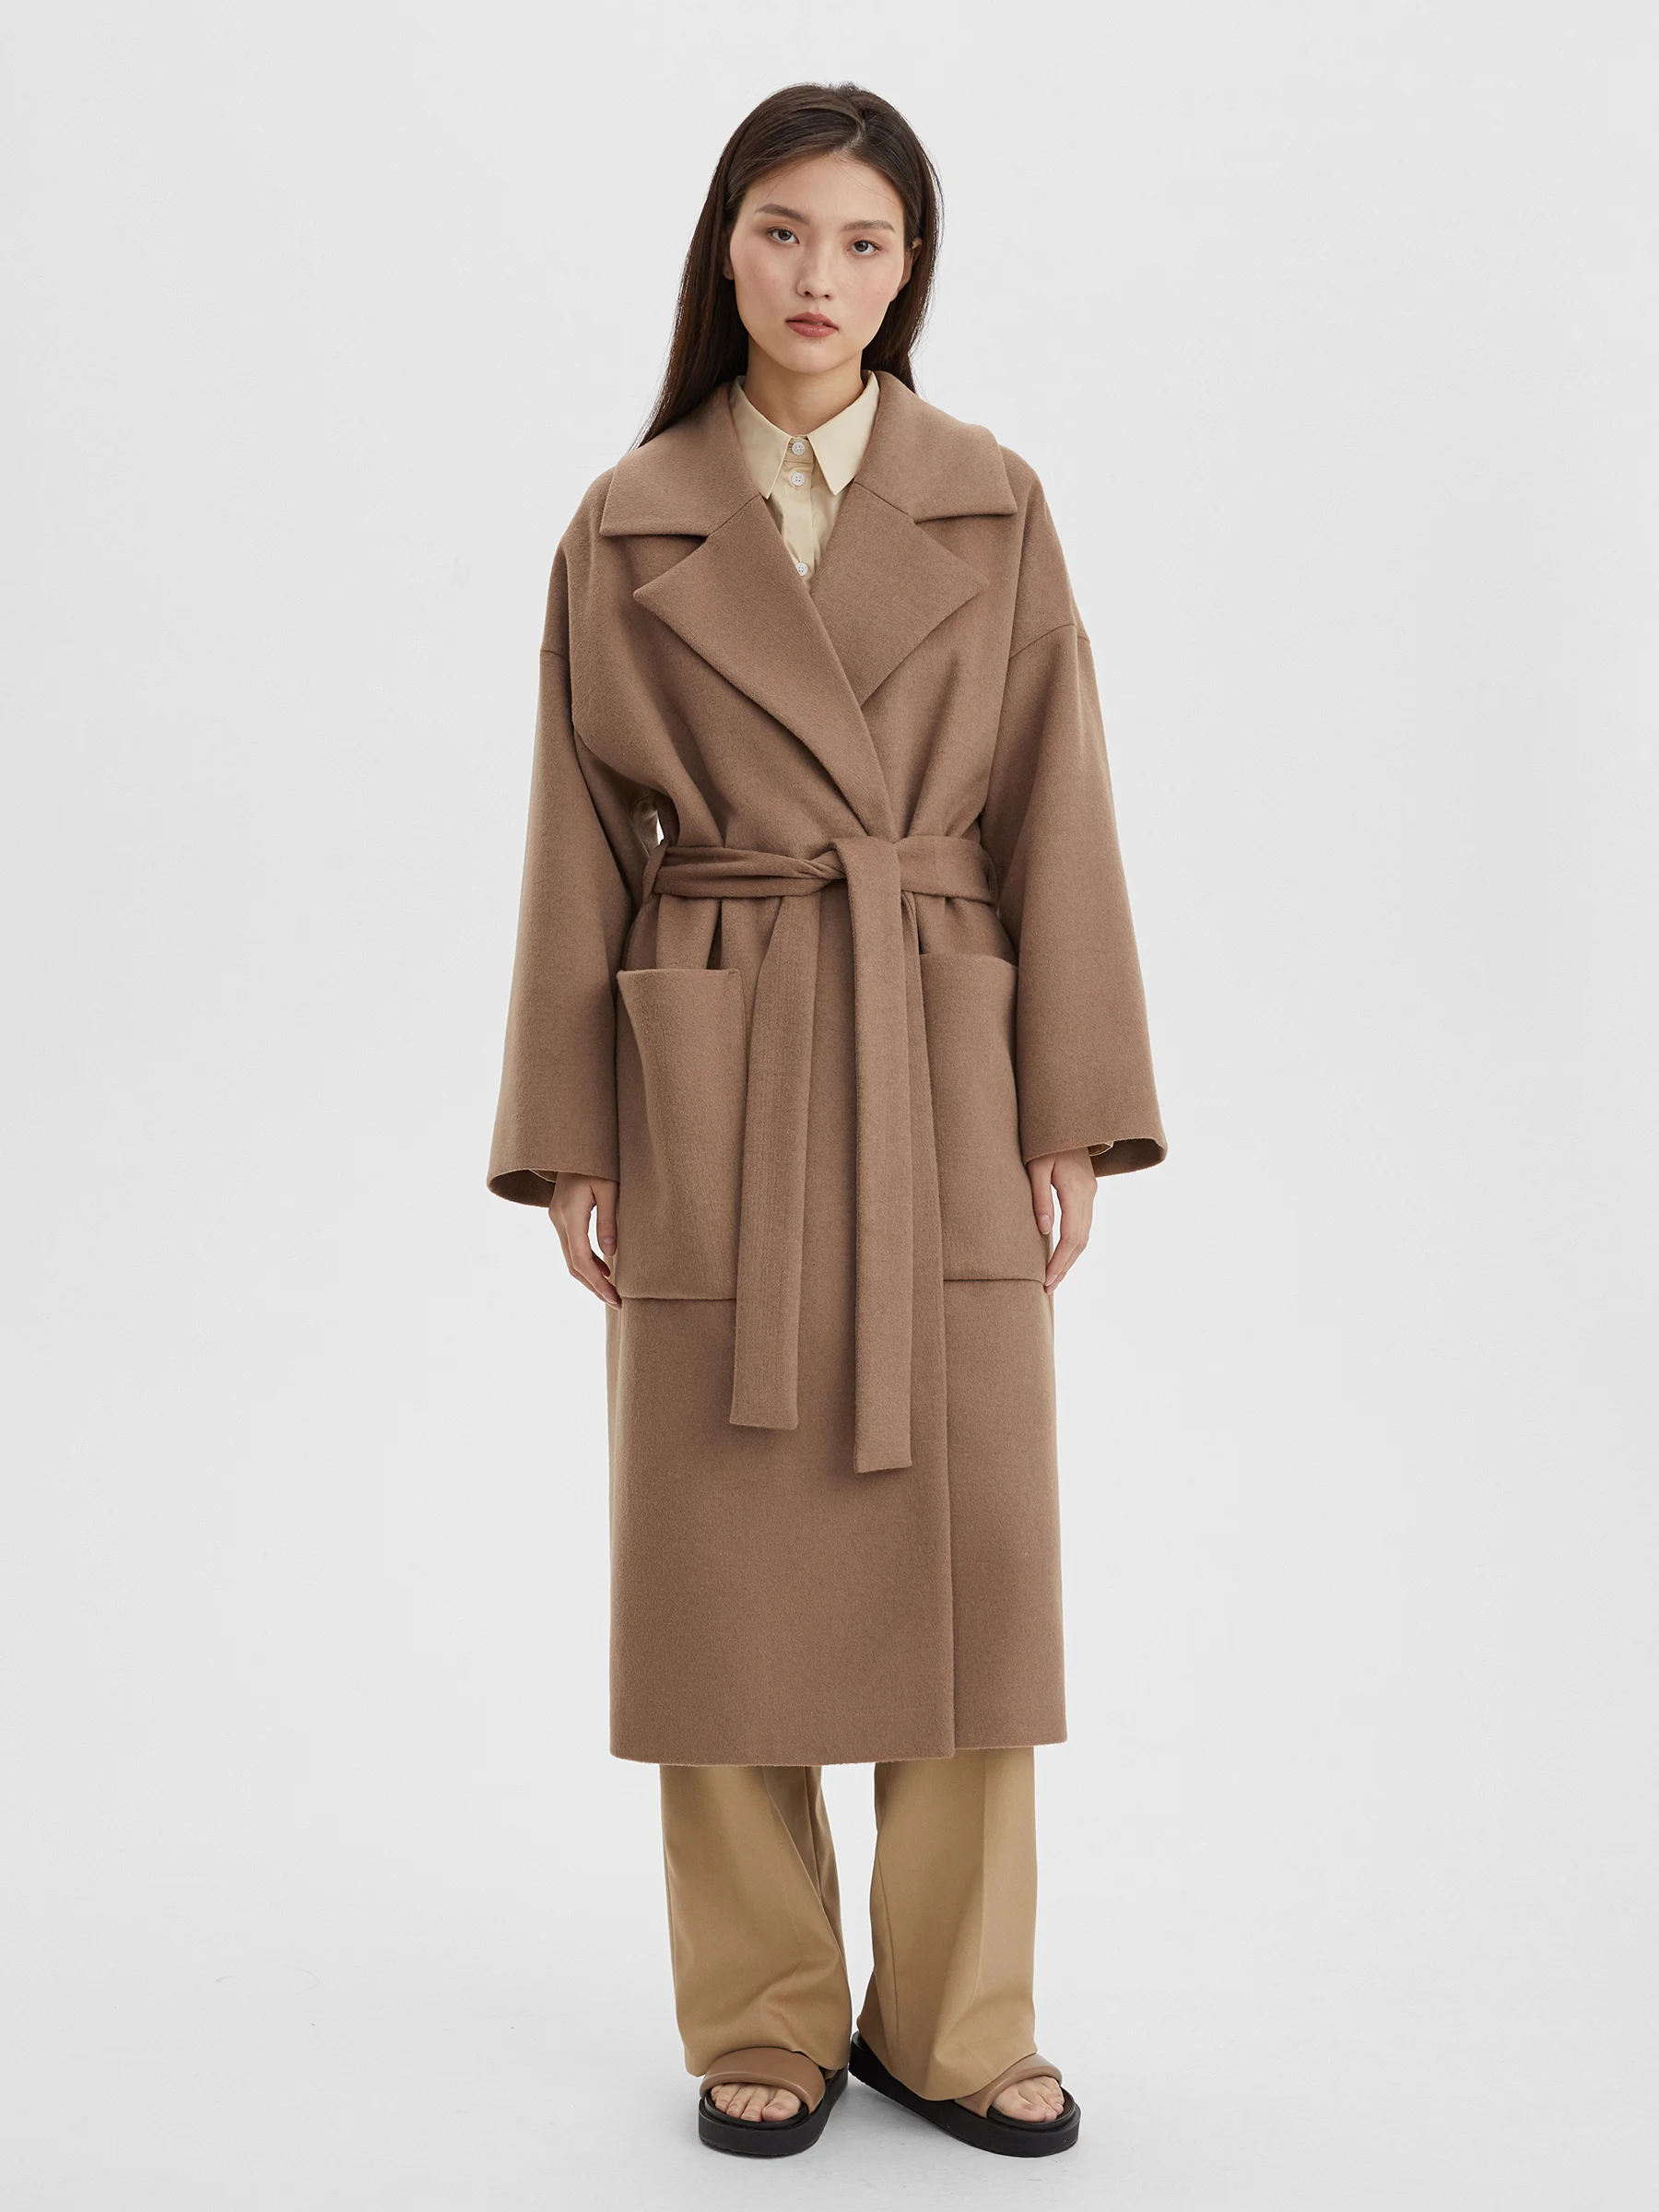 пальто женское длинное с объемными карманами и поясом цвет – молочный Пальто женское длинное с объемными карманами и поясом, цвет – бежевый